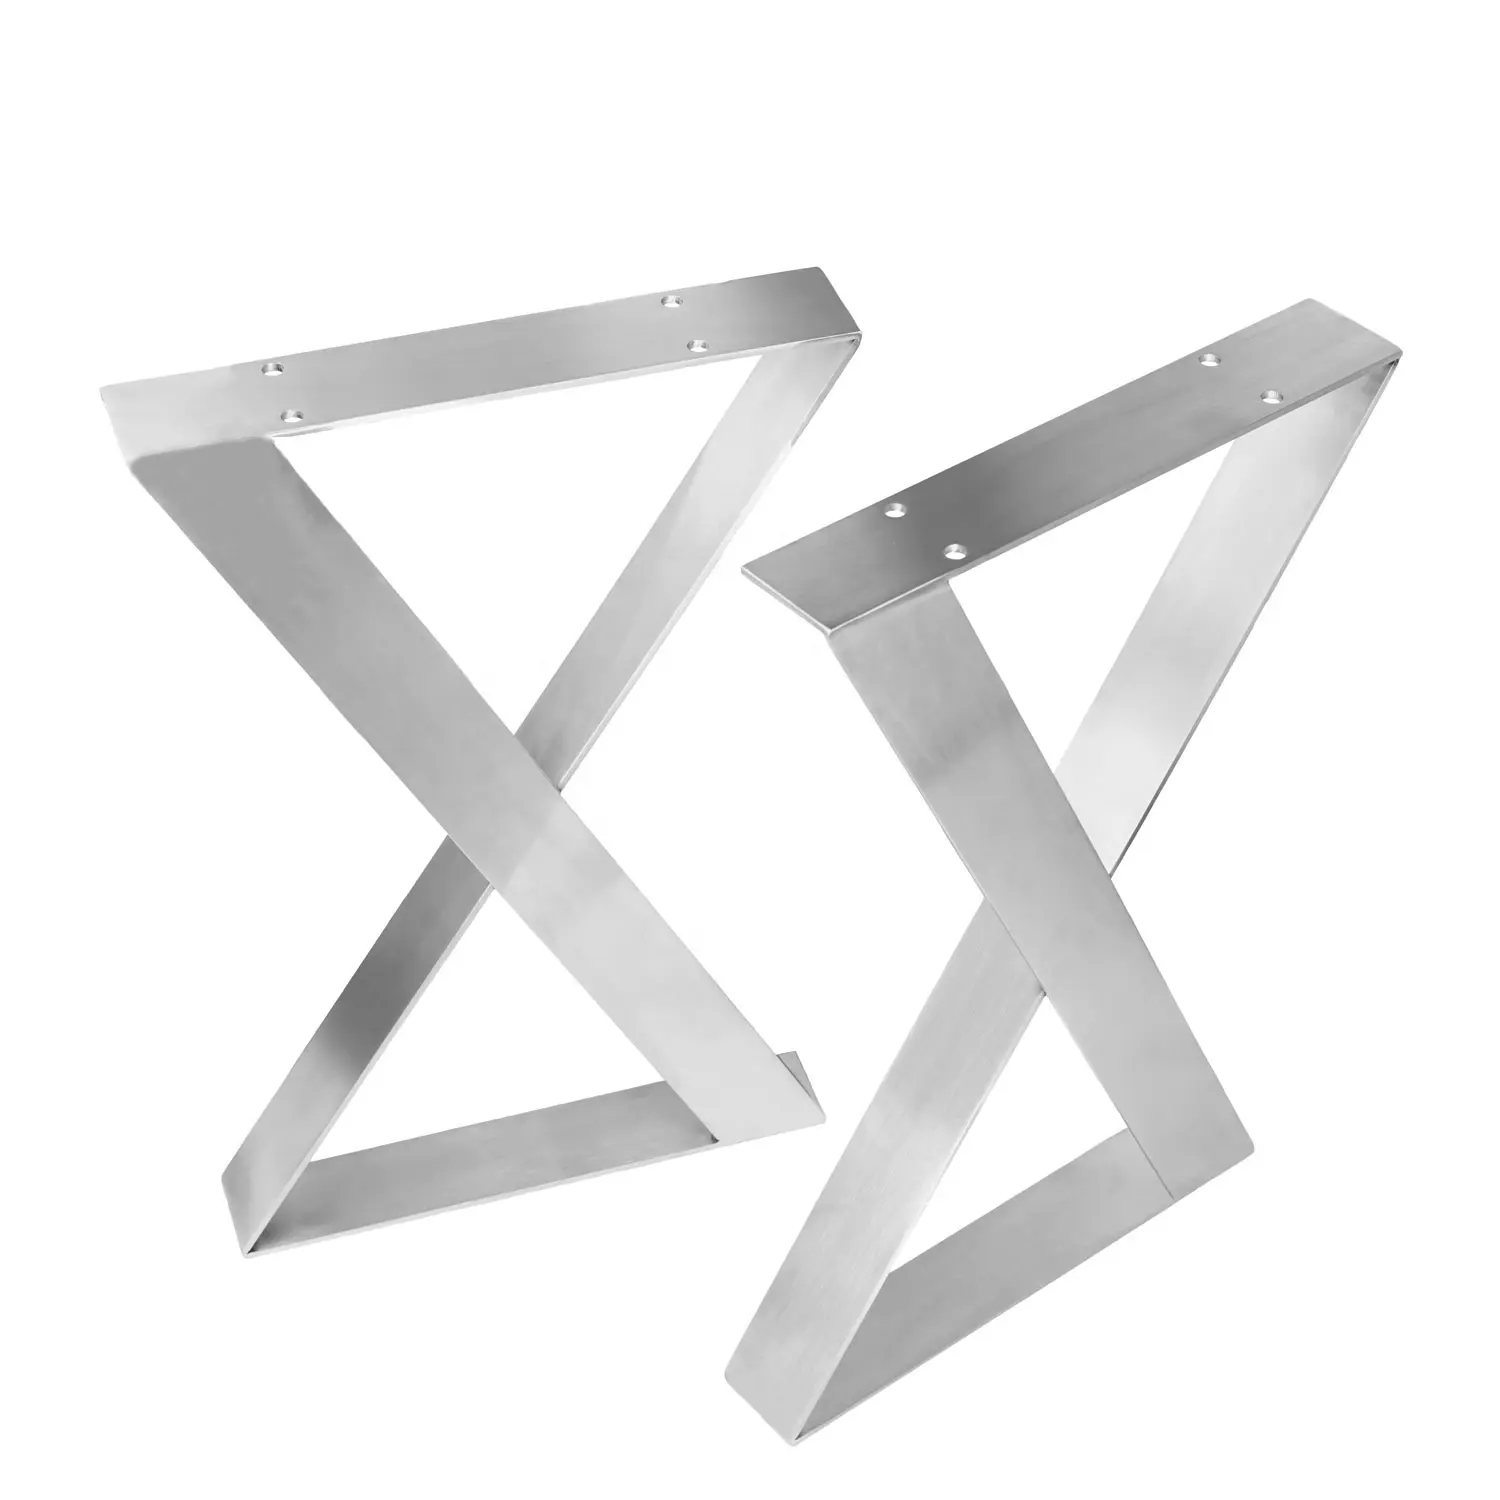 สแตนเลส X ขาโต๊ะที่กำหนดเองอุตสาหกรรม X รูปเฟอร์นิเจอร์ตารางฐานโลหะสแตนเลสขาโต๊ะ